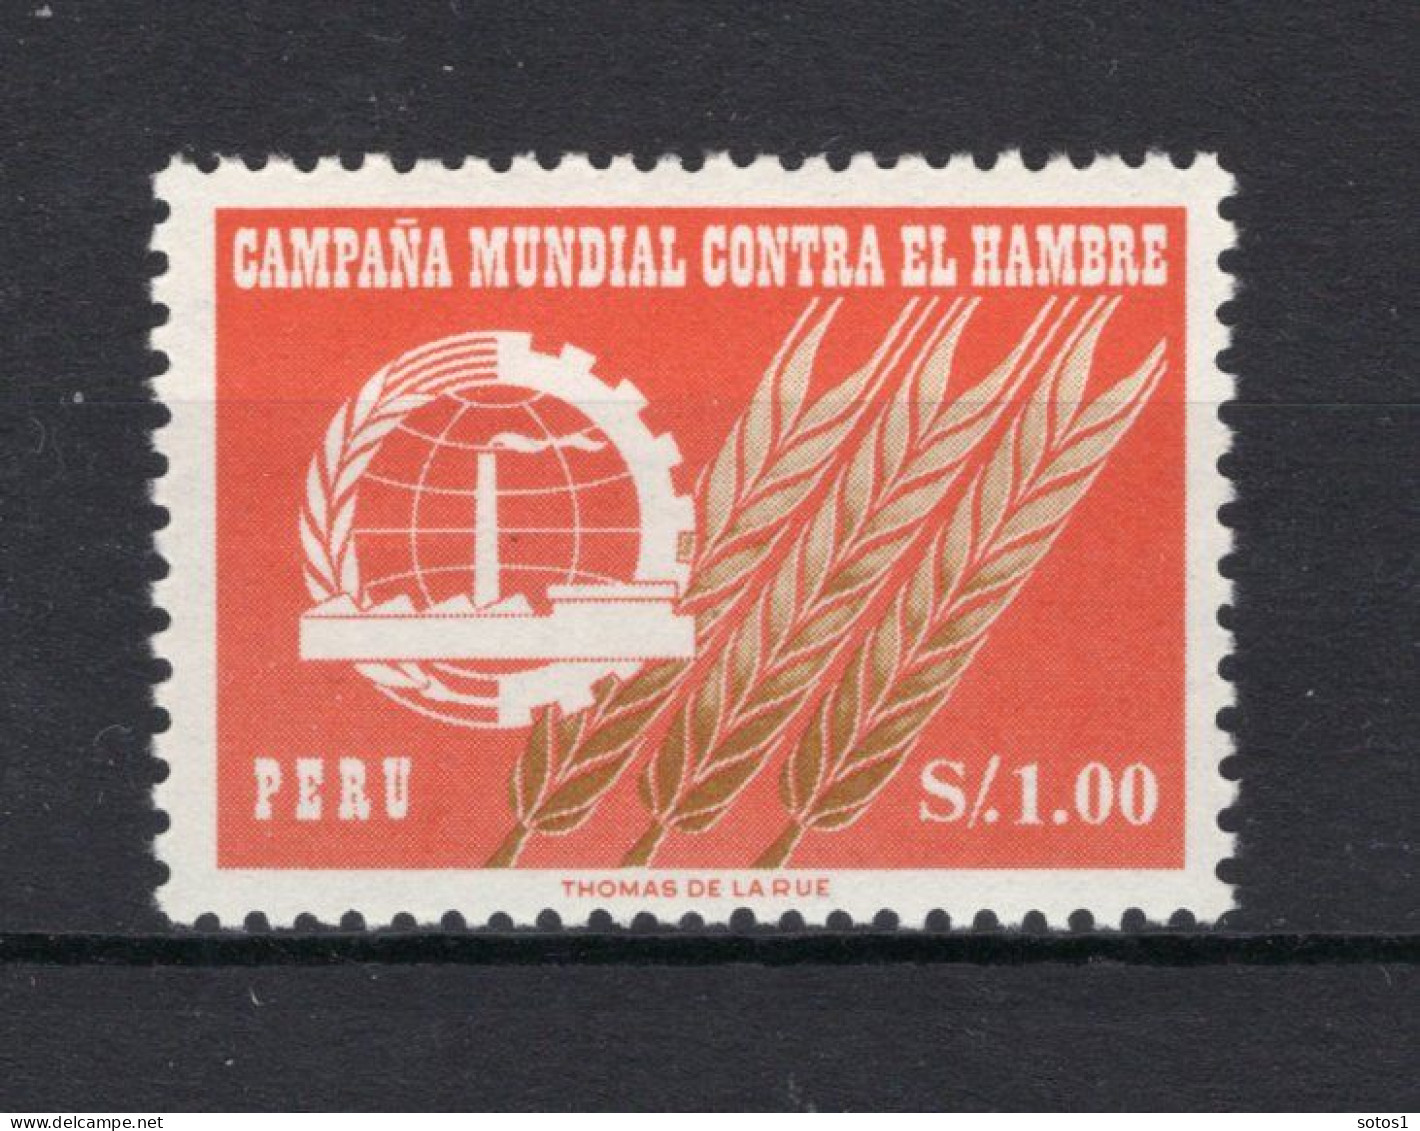 PERU Yt. 464 MNH 1963 - Peru